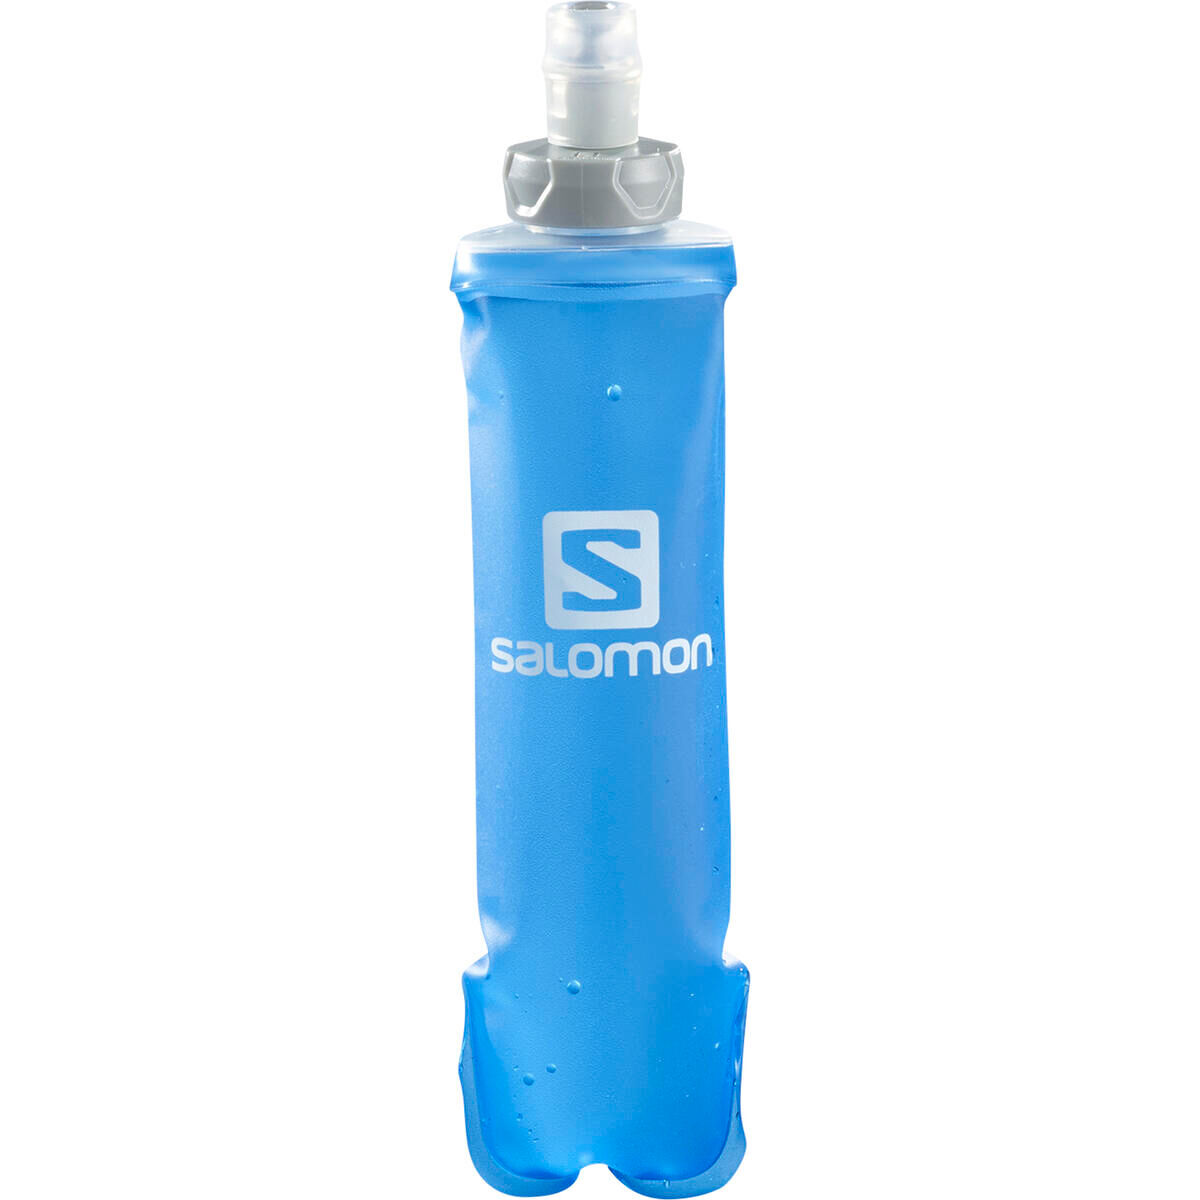 Salomon Soft Flask 250 ml - STD 28 - Trinkflasche